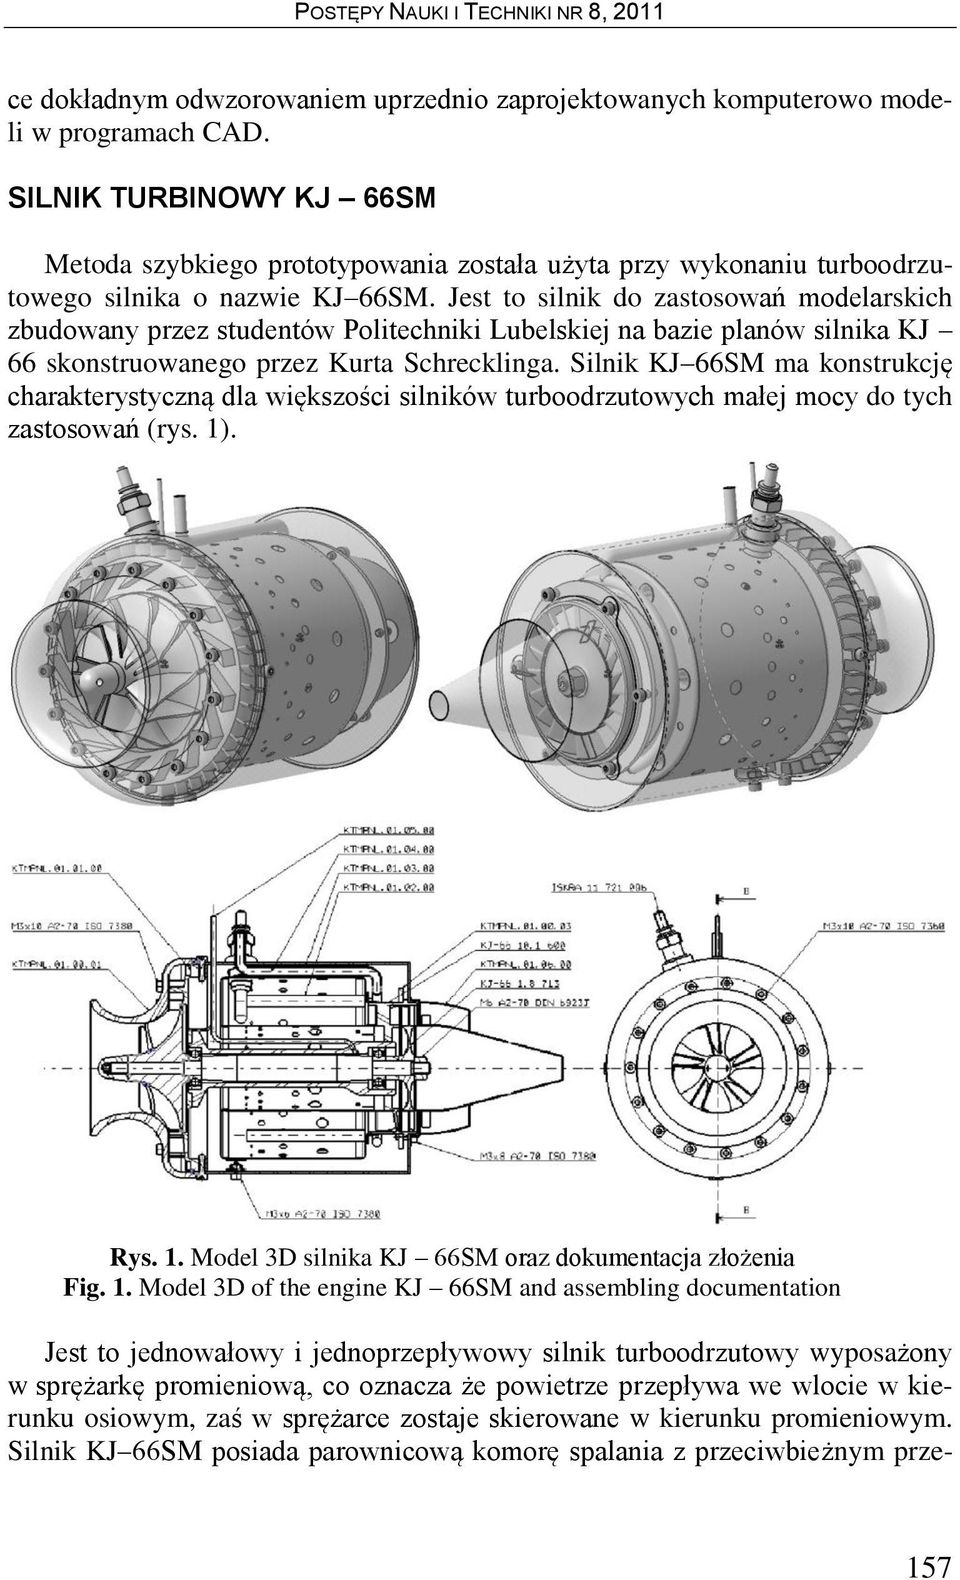 Jest to silnik do zastosowań modelarskich zbudowany przez studentów Politechniki Lubelskiej na bazie planów silnika KJ 66 skonstruowanego przez Kurta Schrecklinga.